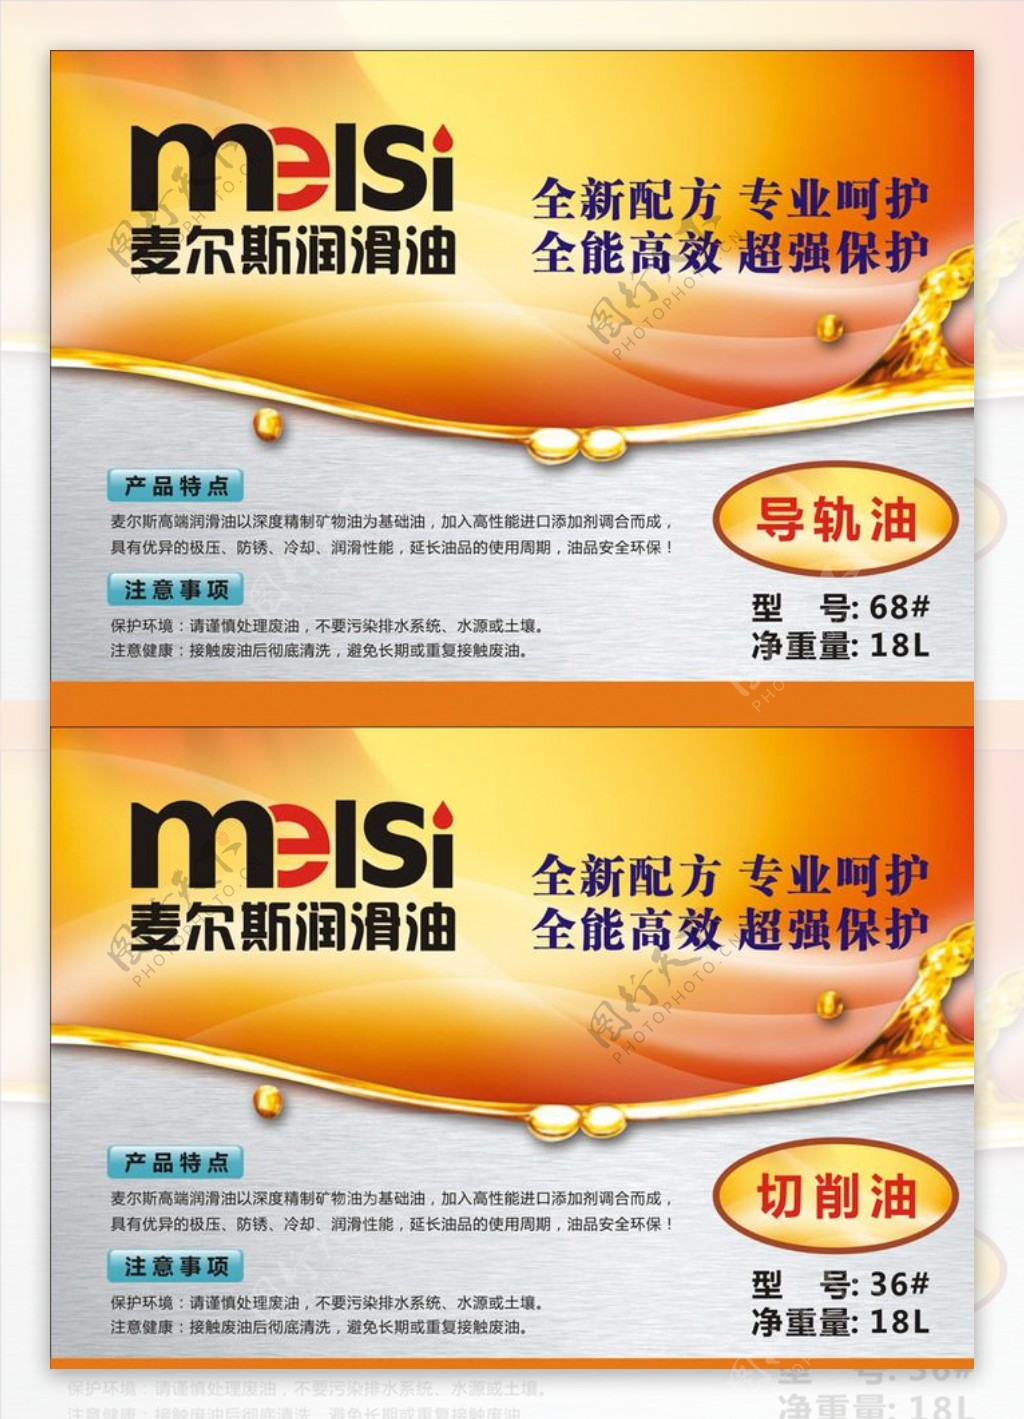 唐城广告麦尔斯润滑油卡片图片